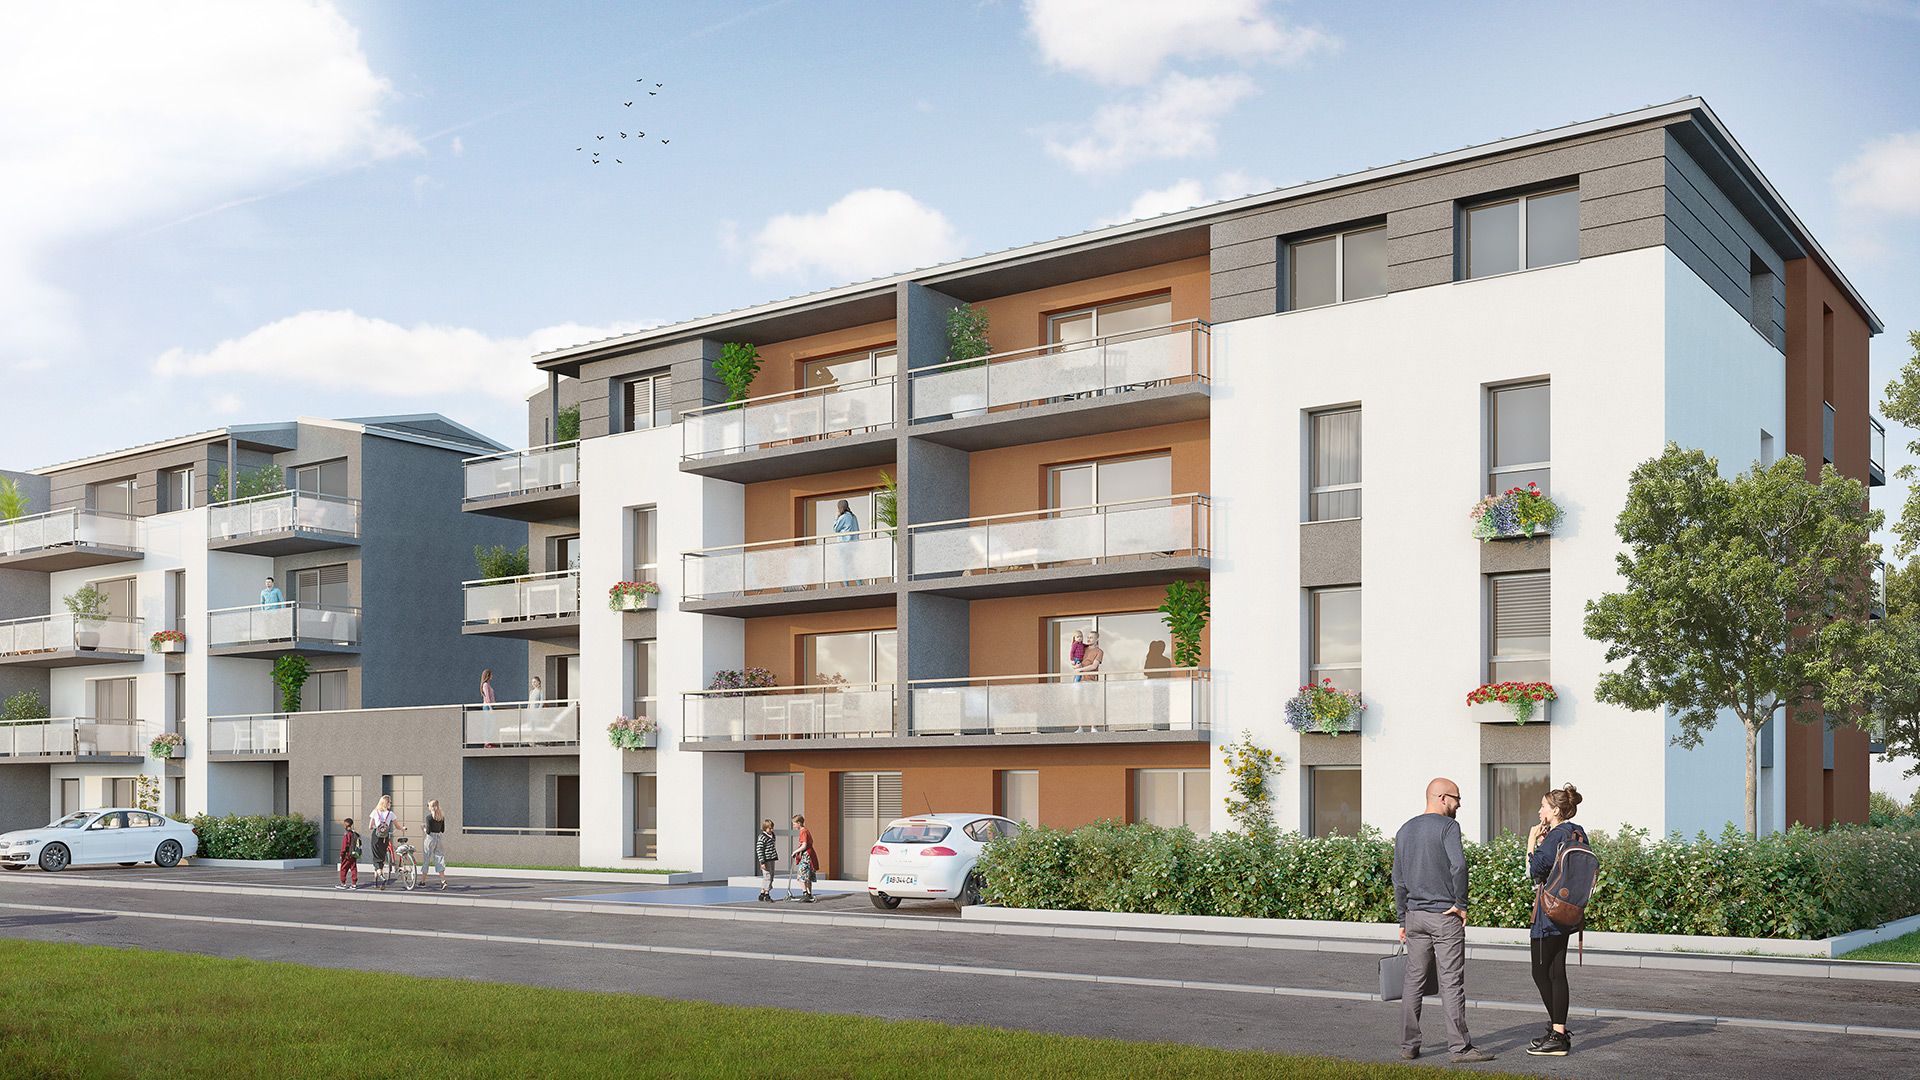 Concept Immobilier - Les Jardins d'Agathe - Appartements neufs à Florange - Vue extérieure